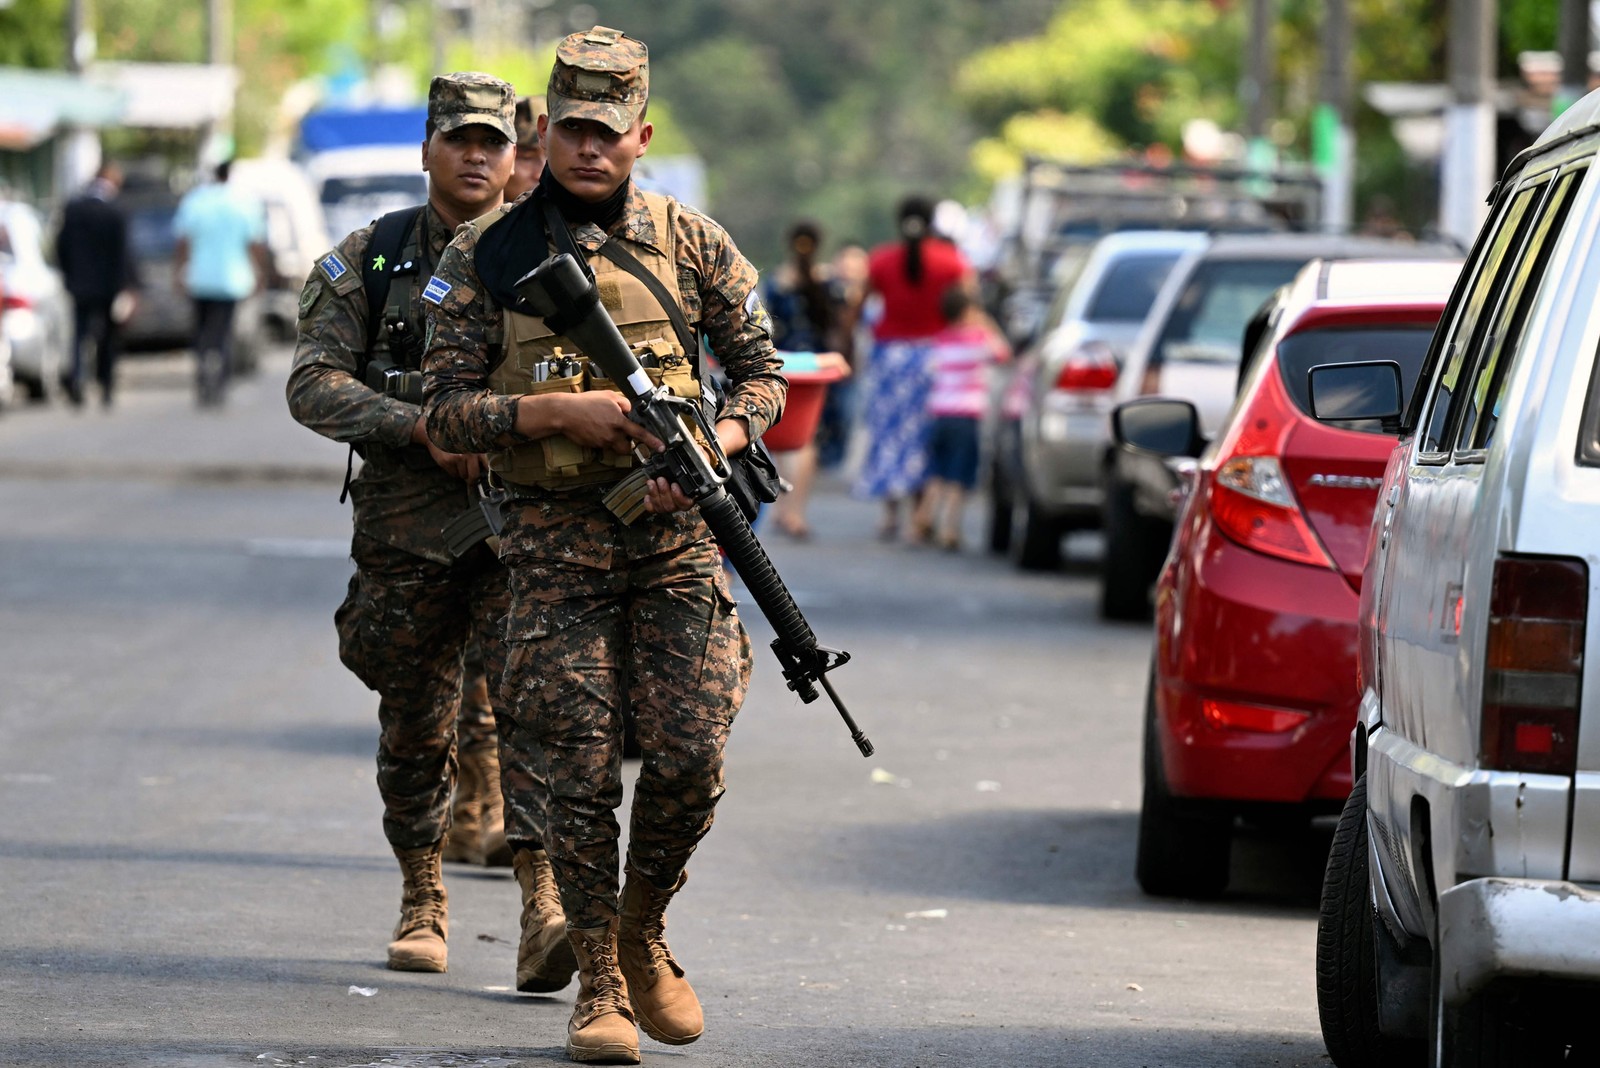 Soldados patrulham durante uma operação contra membros de gangues em La Campanera, El Salvador — Foto: MARVIN RECINOS/AFP